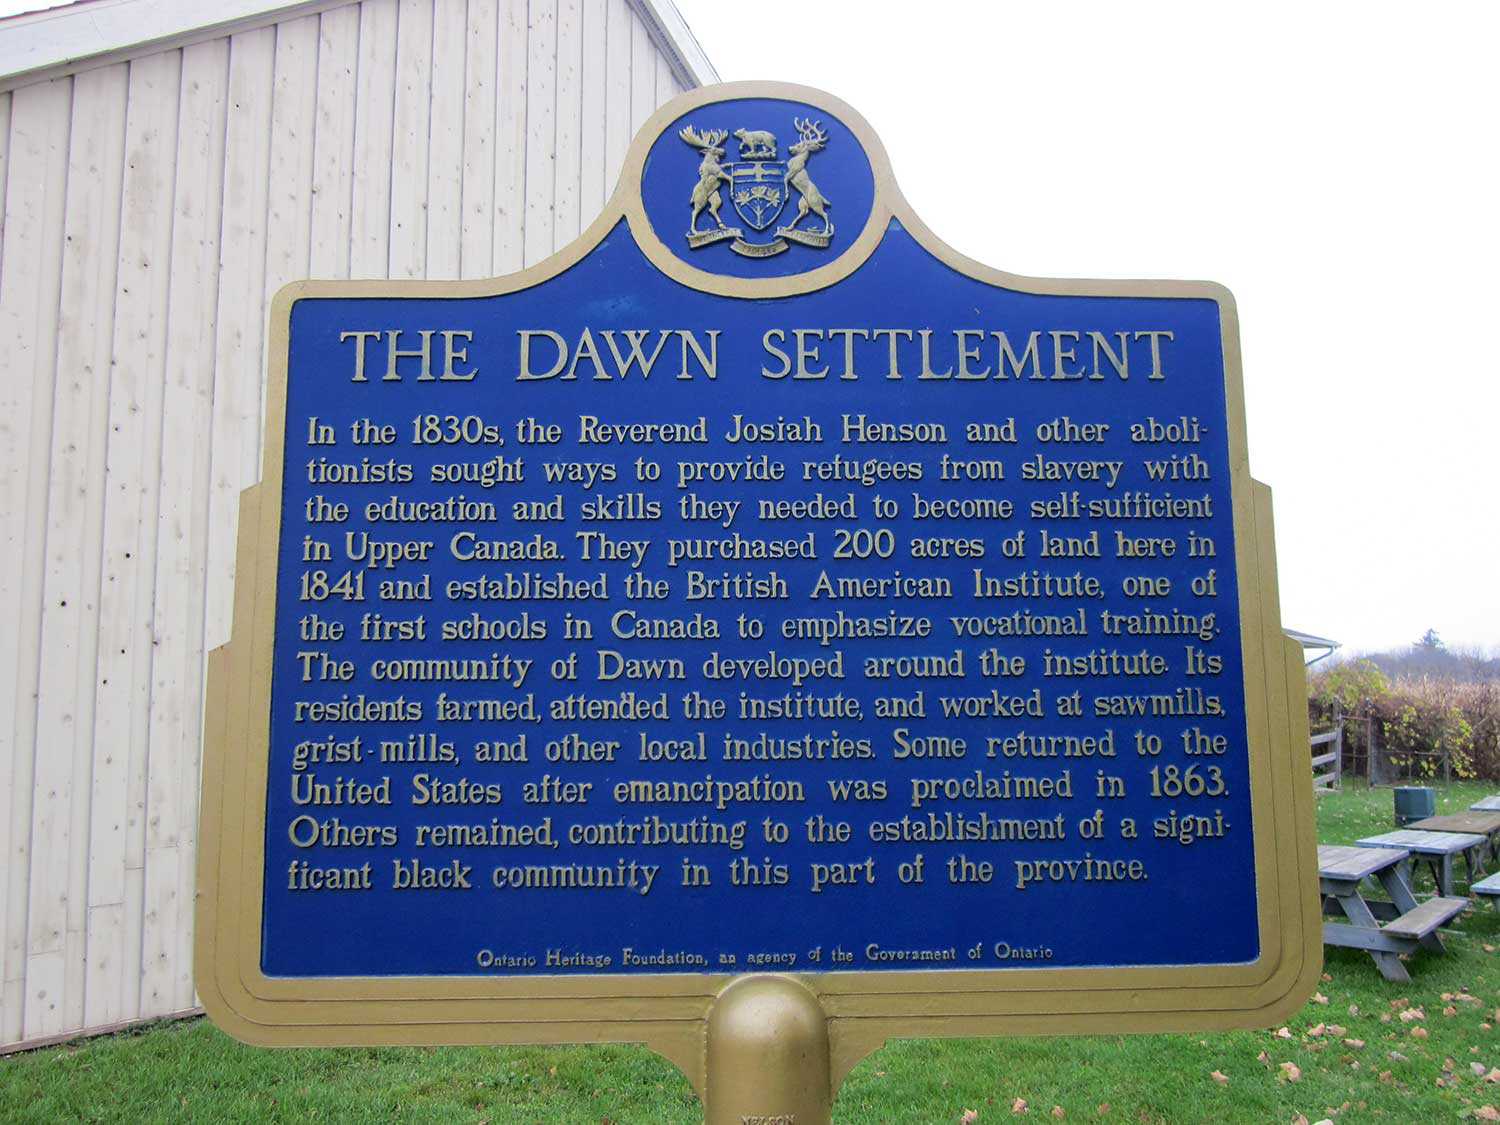 Plaque provinciale de la Fiducie du patrimoine ontarien commémorant la Colonie de Dawn